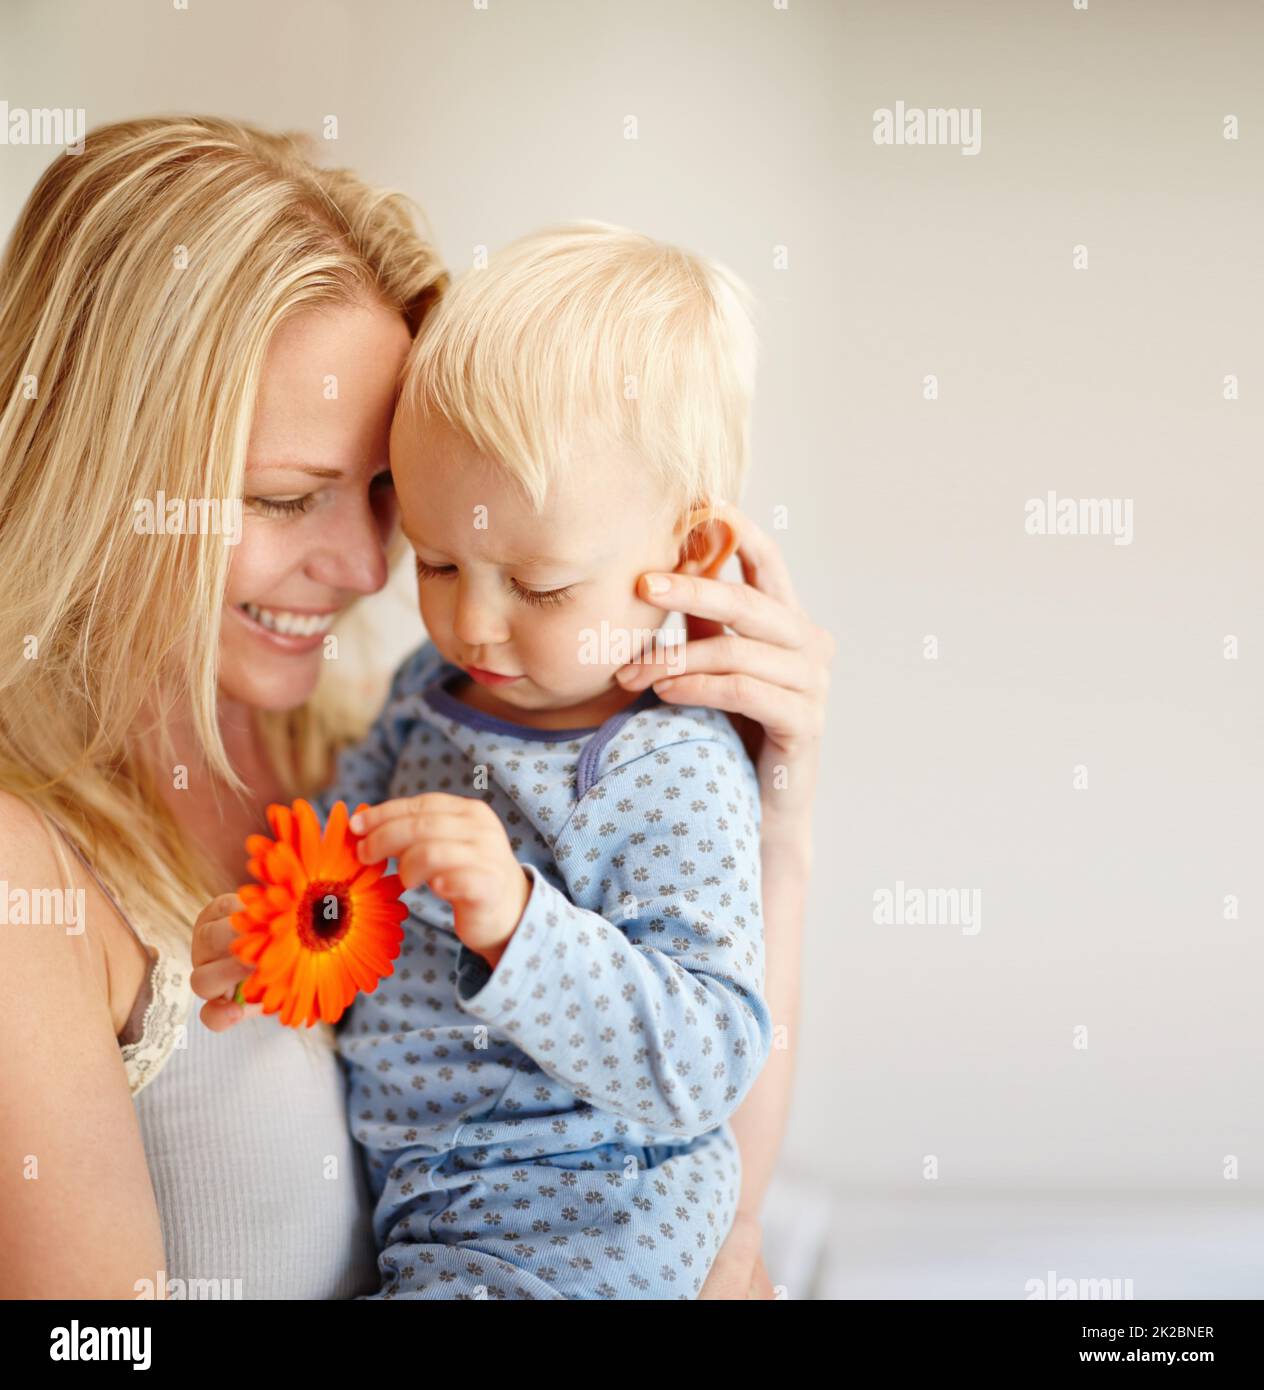 Besondere Momente der Mutterschaft. Eine liebevolle Mutter hält ihren Sohn, während er auf eine orangefarbene Blume blickt. Stockfoto